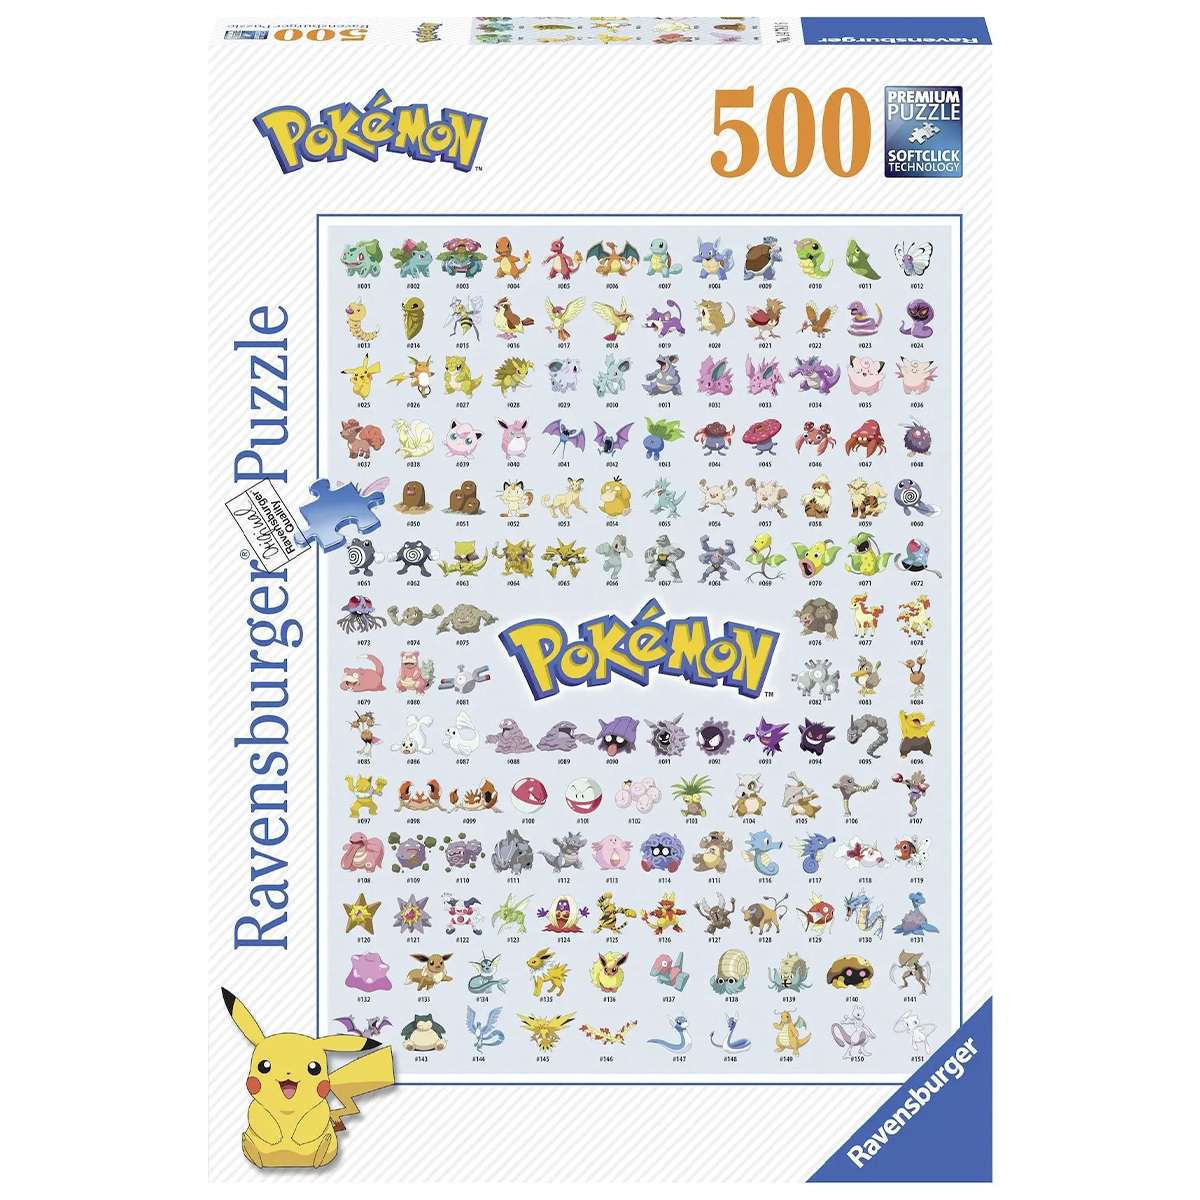 Puzzle Ravensburger Pokémon Collection de 500 piezas